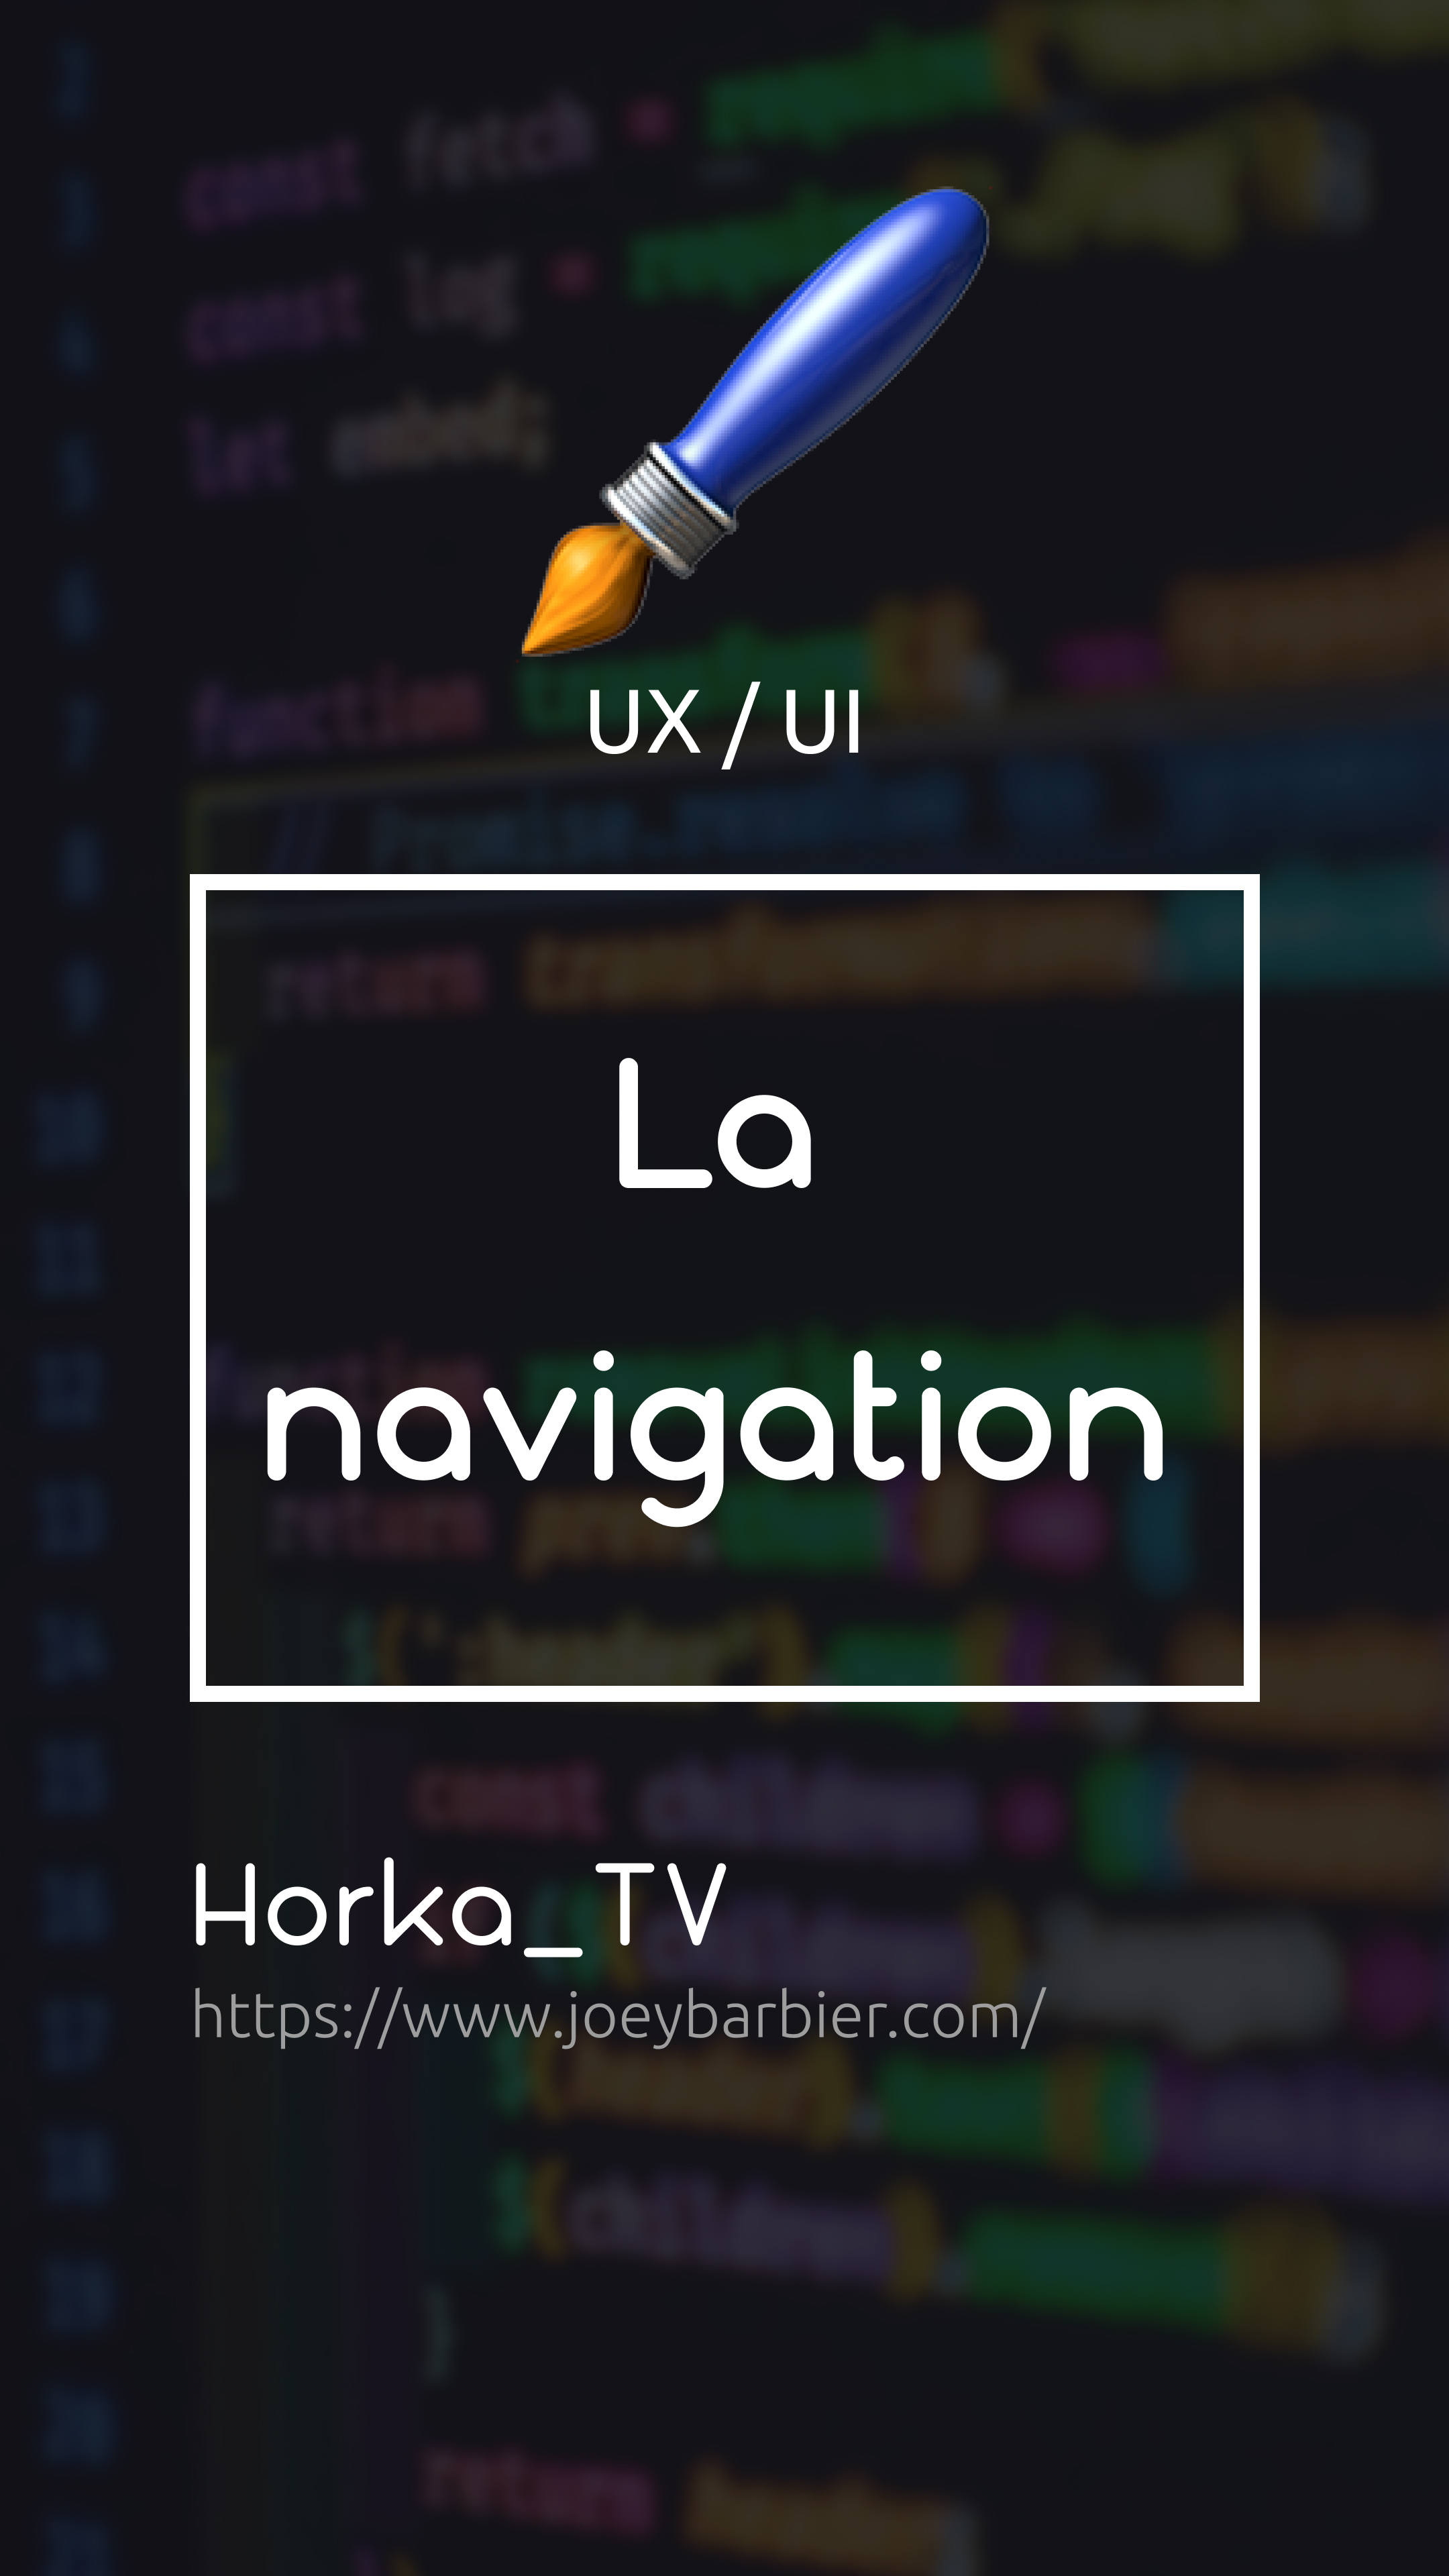 UX: La navigation